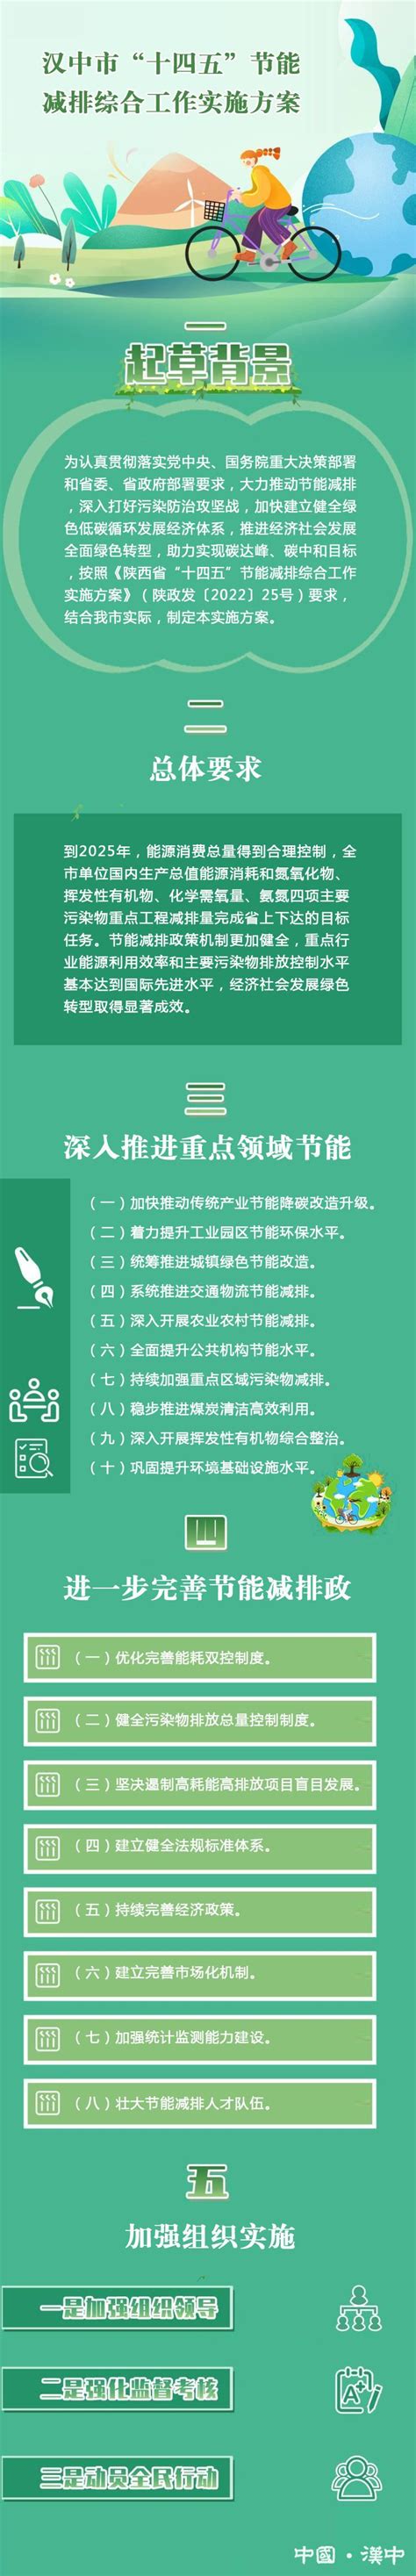 图解：“十四五”节能减排综合工作实施方案 - 图文解读 - 汉中市人民政府